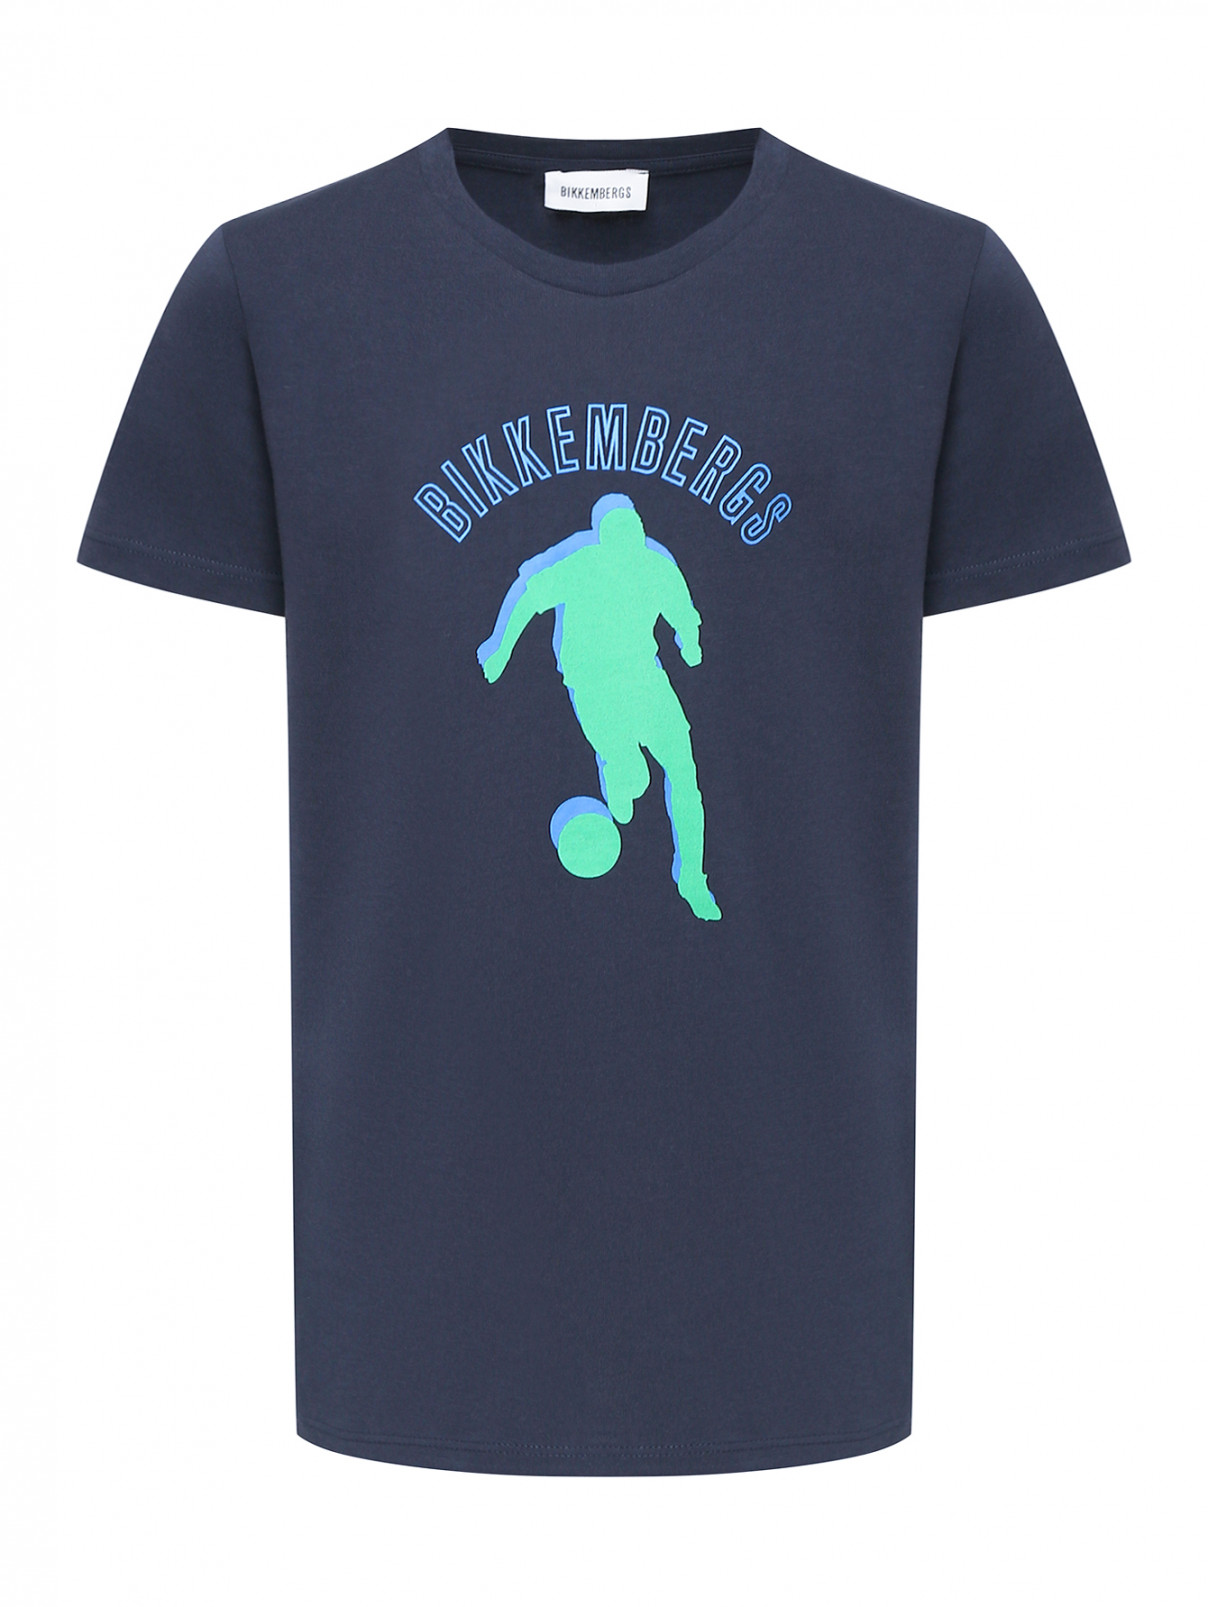 Футболка с принтом из хлопка Bikkembergs  –  Общий вид  – Цвет:  Синий